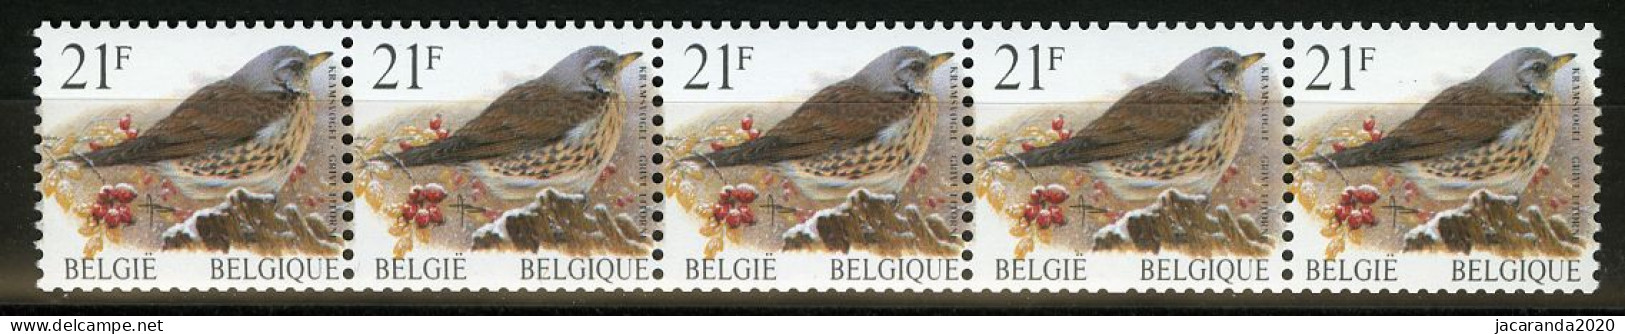 België R89 - Vogels - Oiseaux - Buzin (2792) - 21F - Kramsvogel - Strook Met 5 Cijfers - Bande Avec 5 Chiffres - Coil Stamps